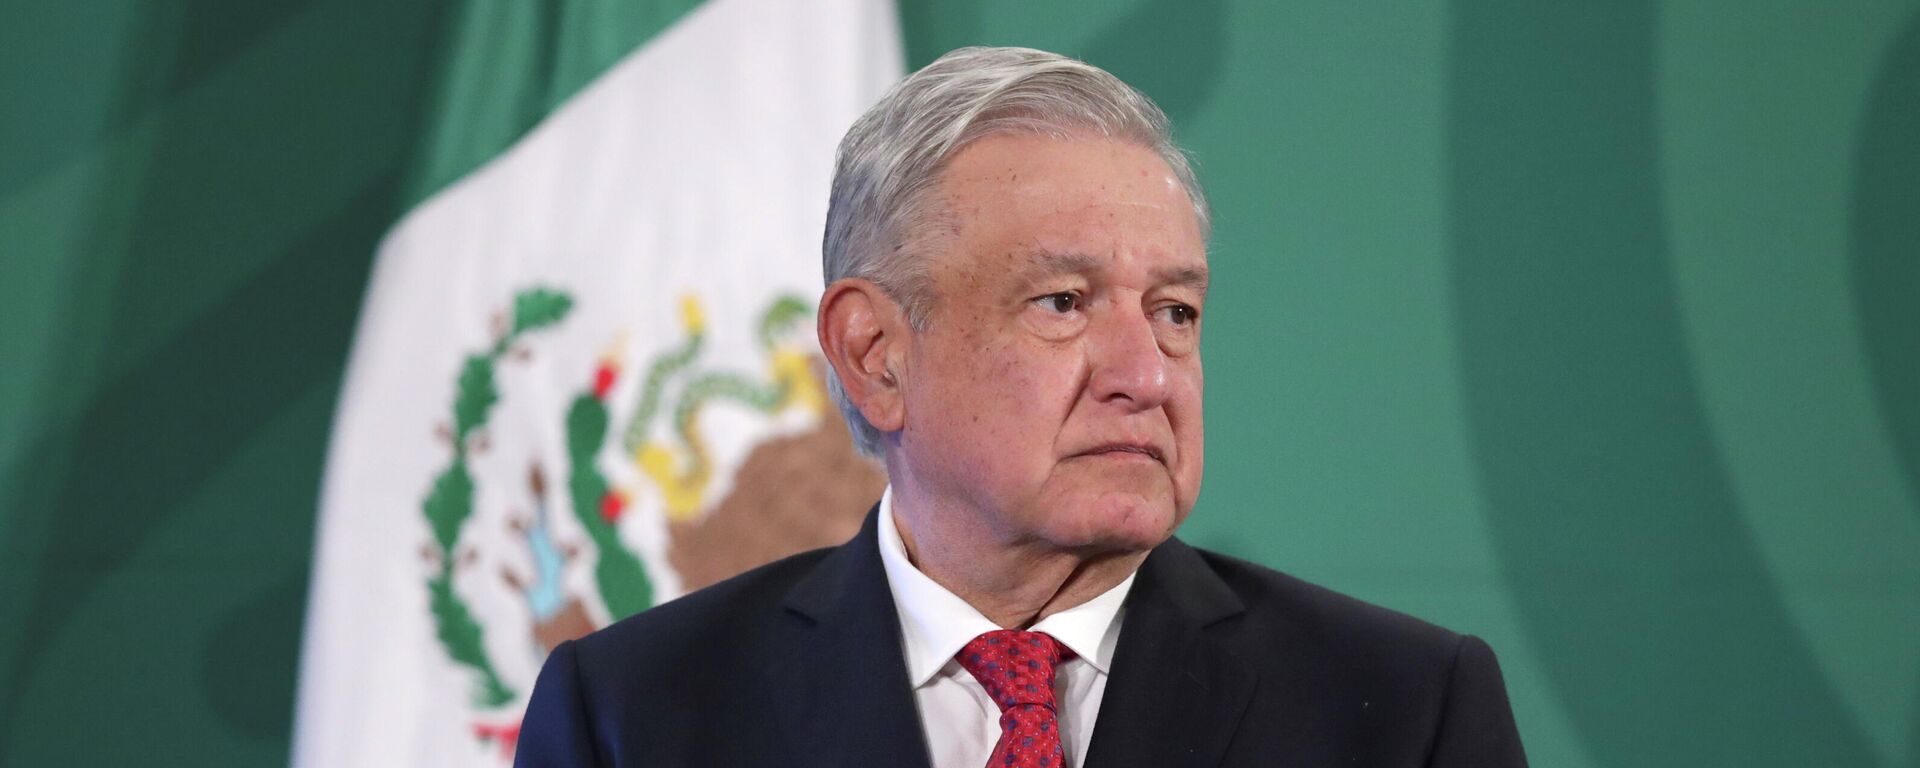 Andrés Manuel López Obrador, presidente de México - Sputnik Mundo, 1920, 26.03.2021